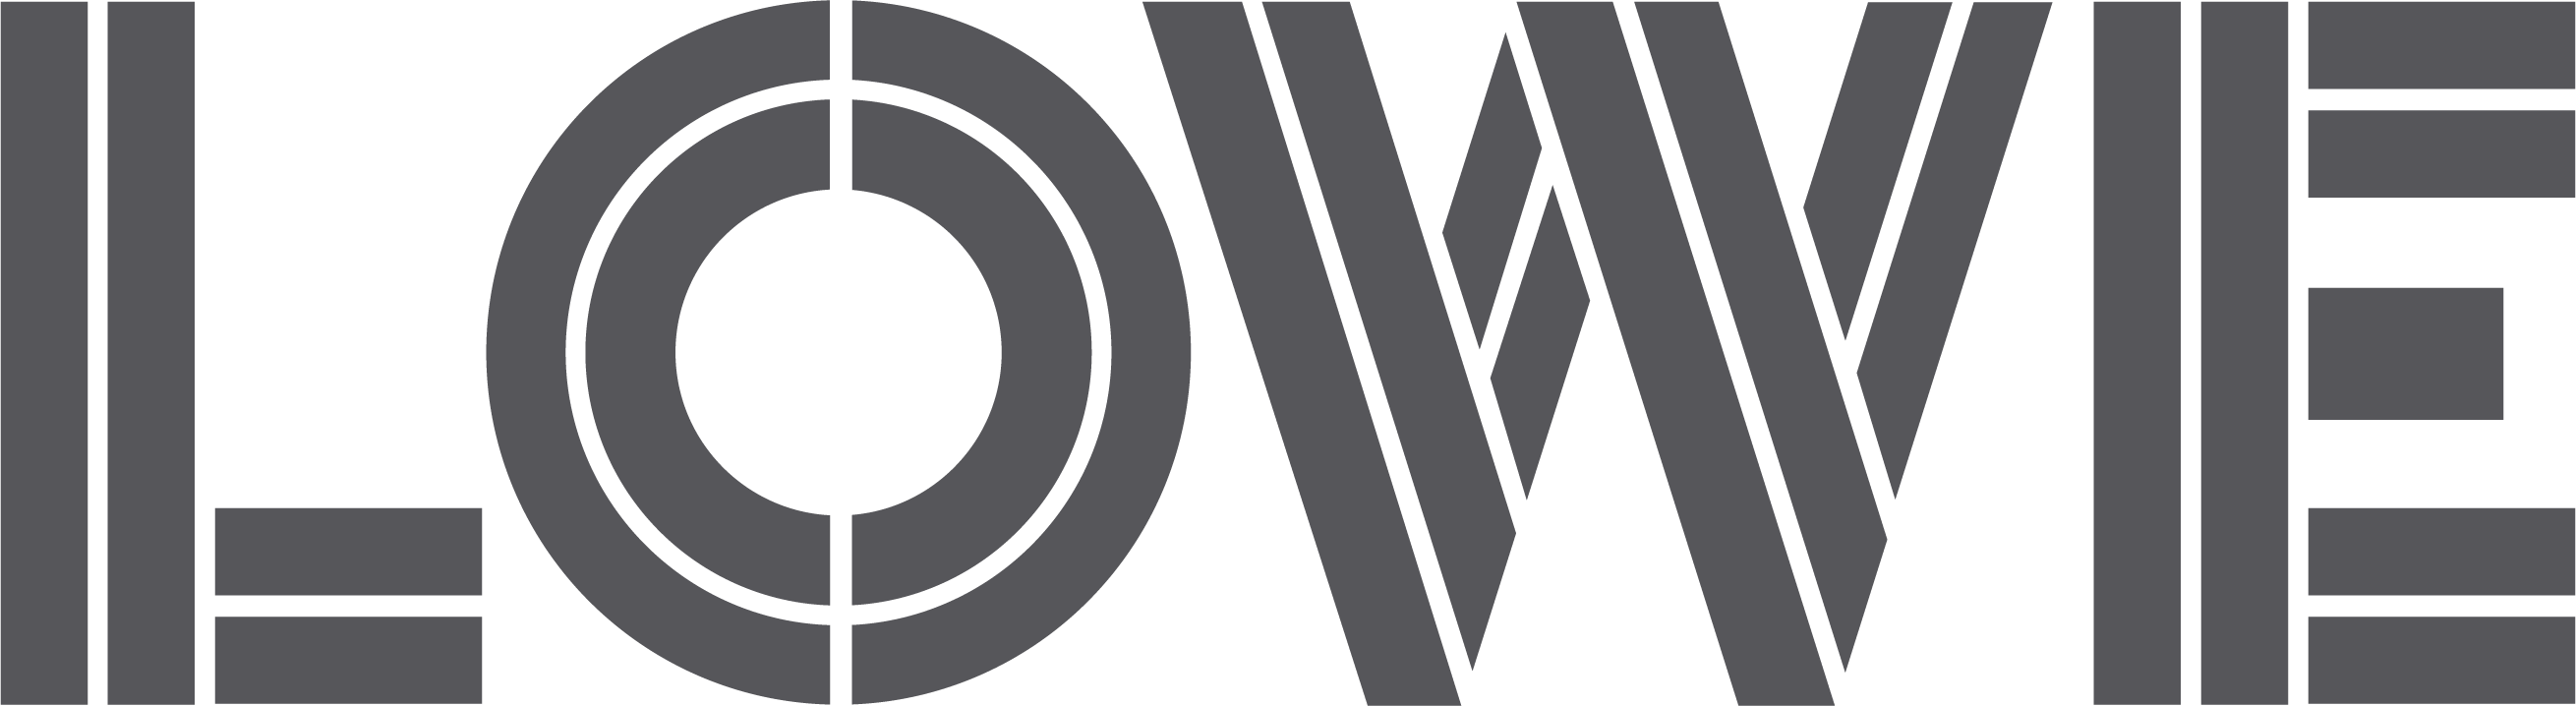 Lowe_Logo_Grey